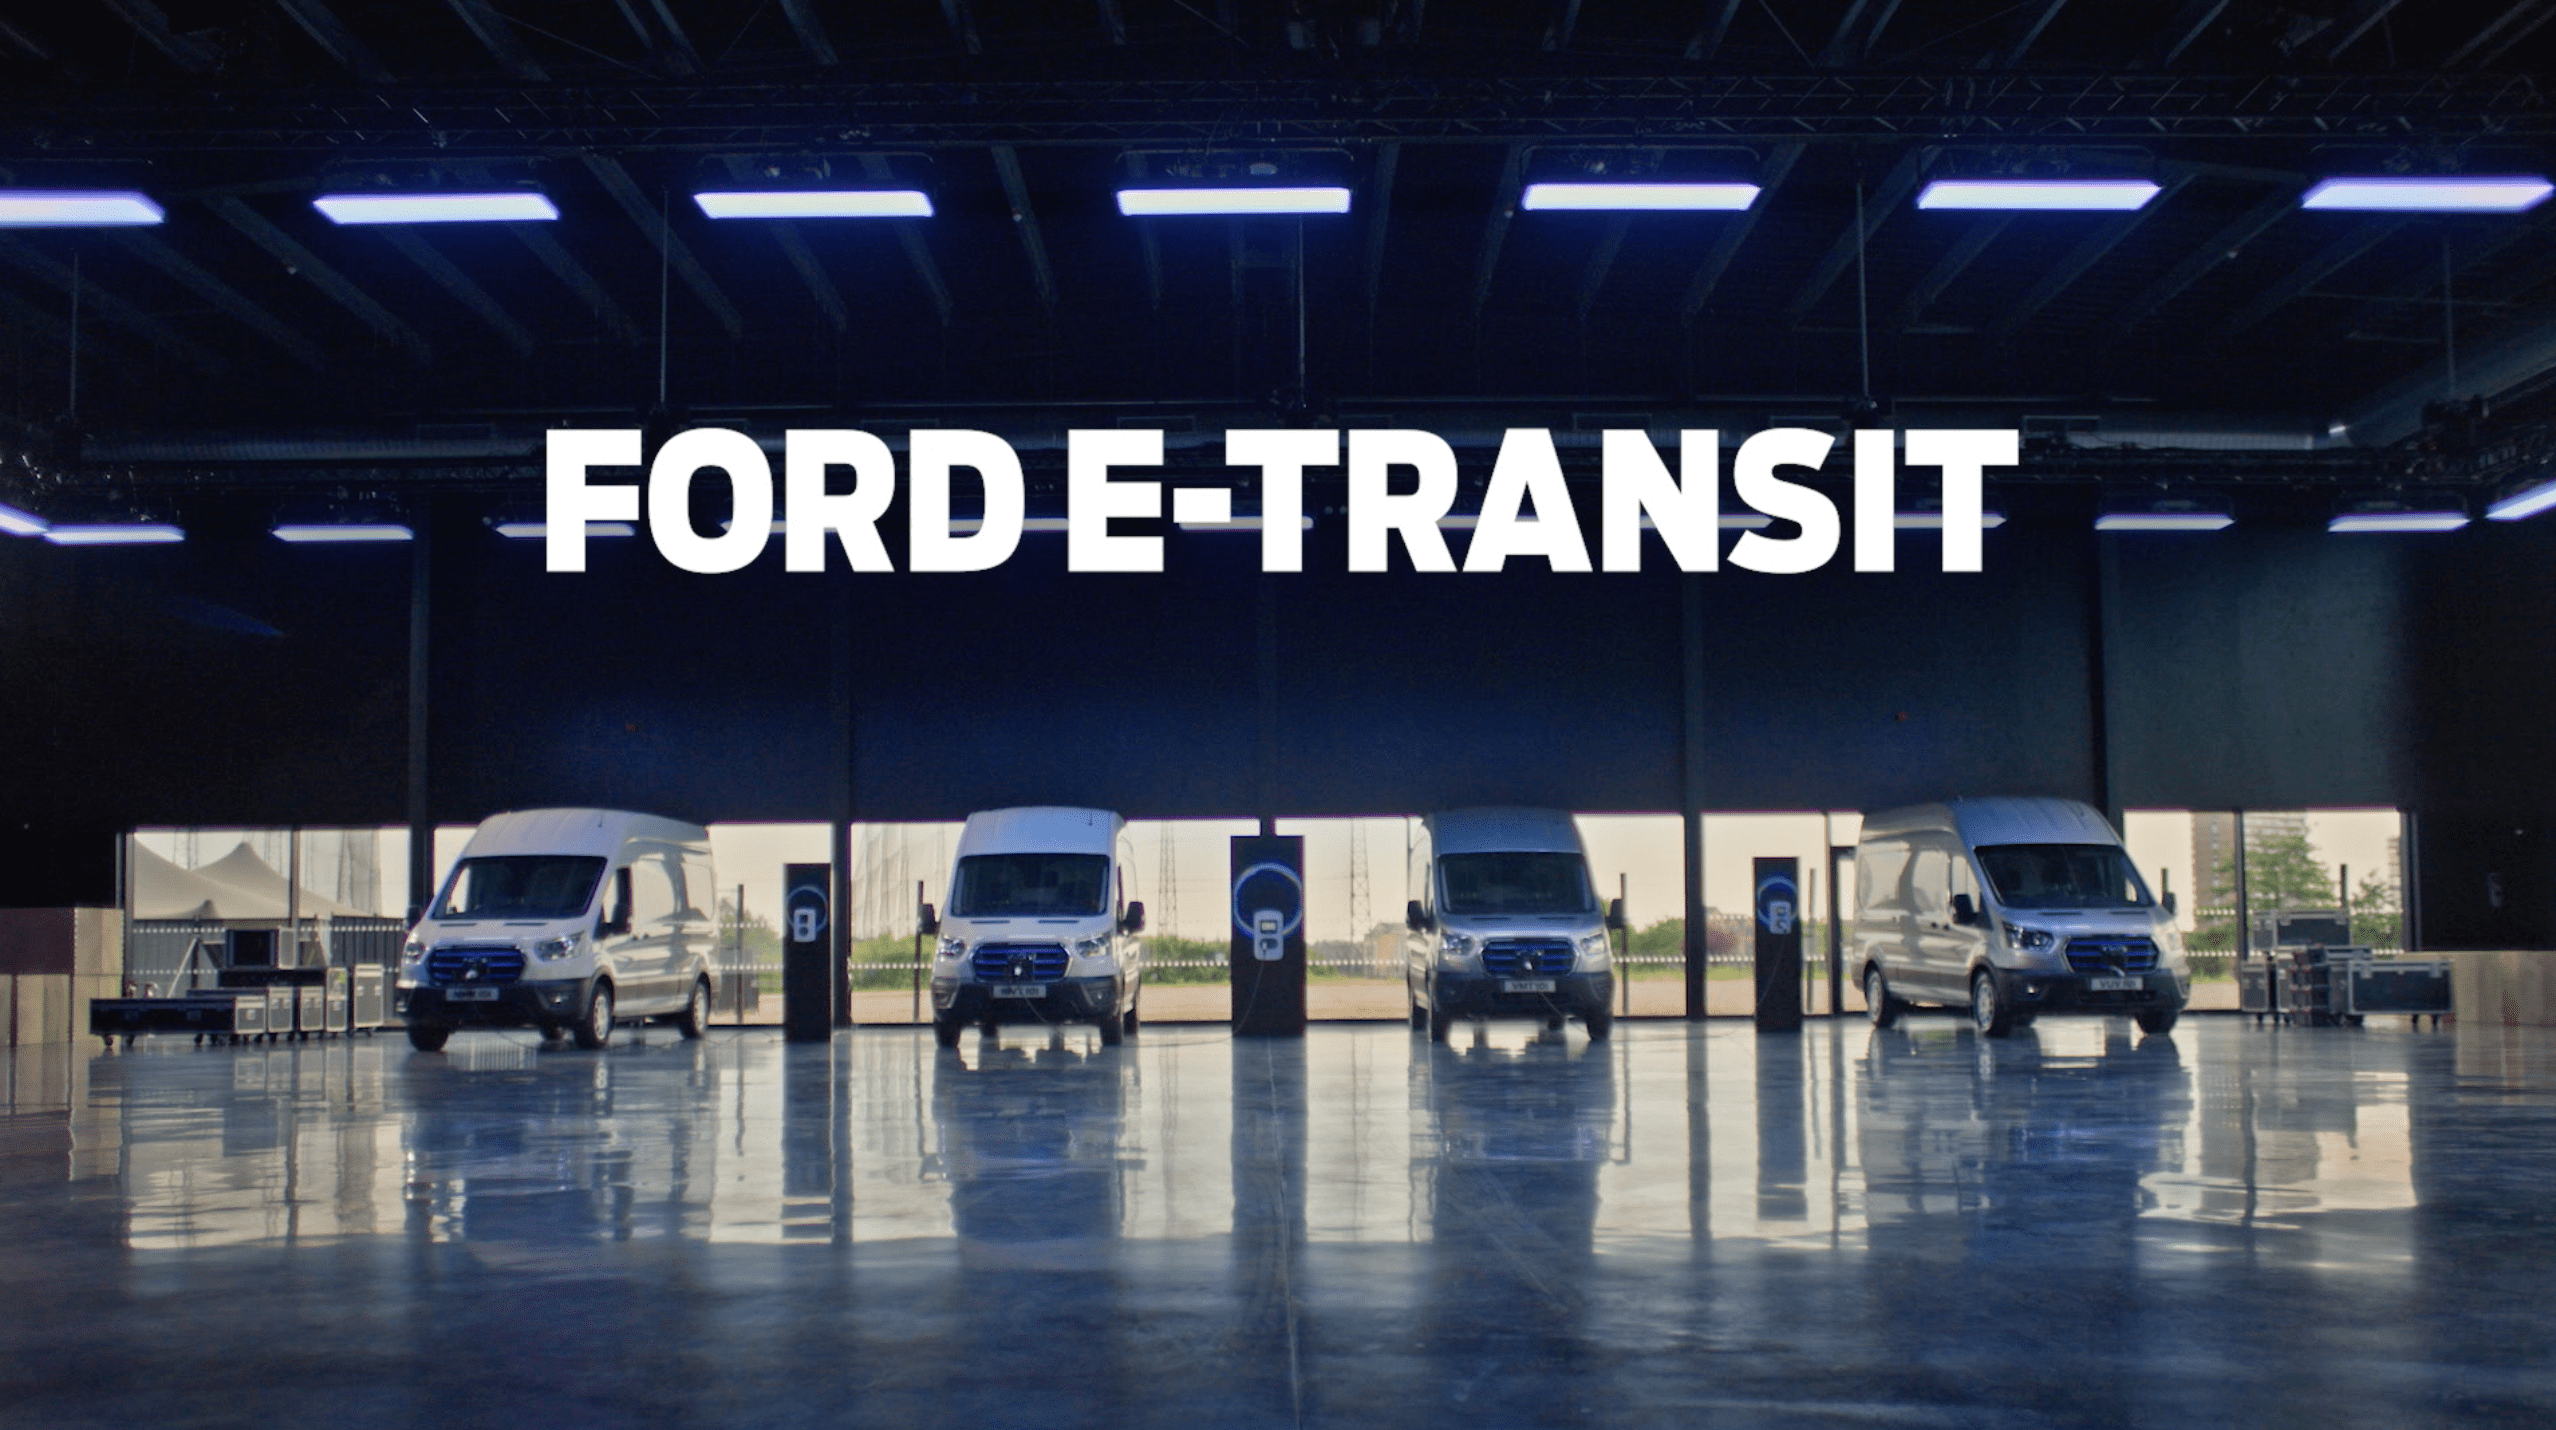 Ford E-Transit garage